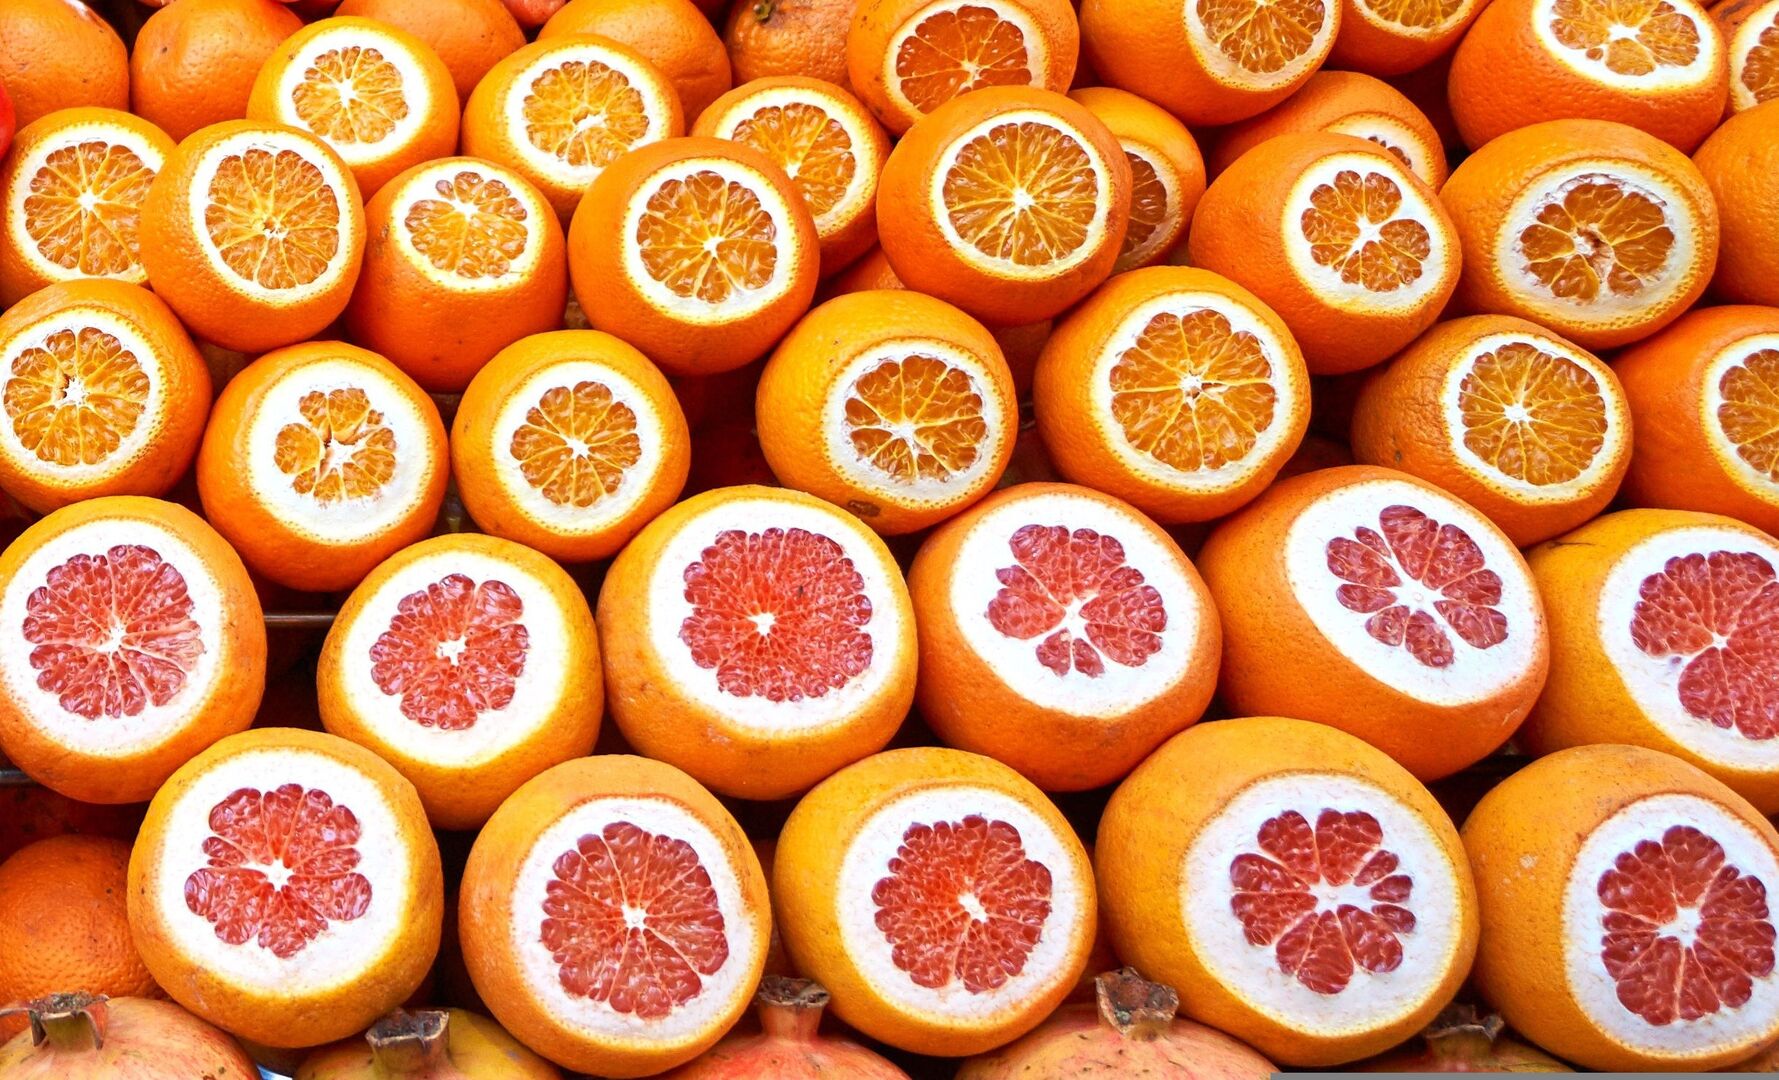 10 alimentos con vitamina C para proteger tu piel